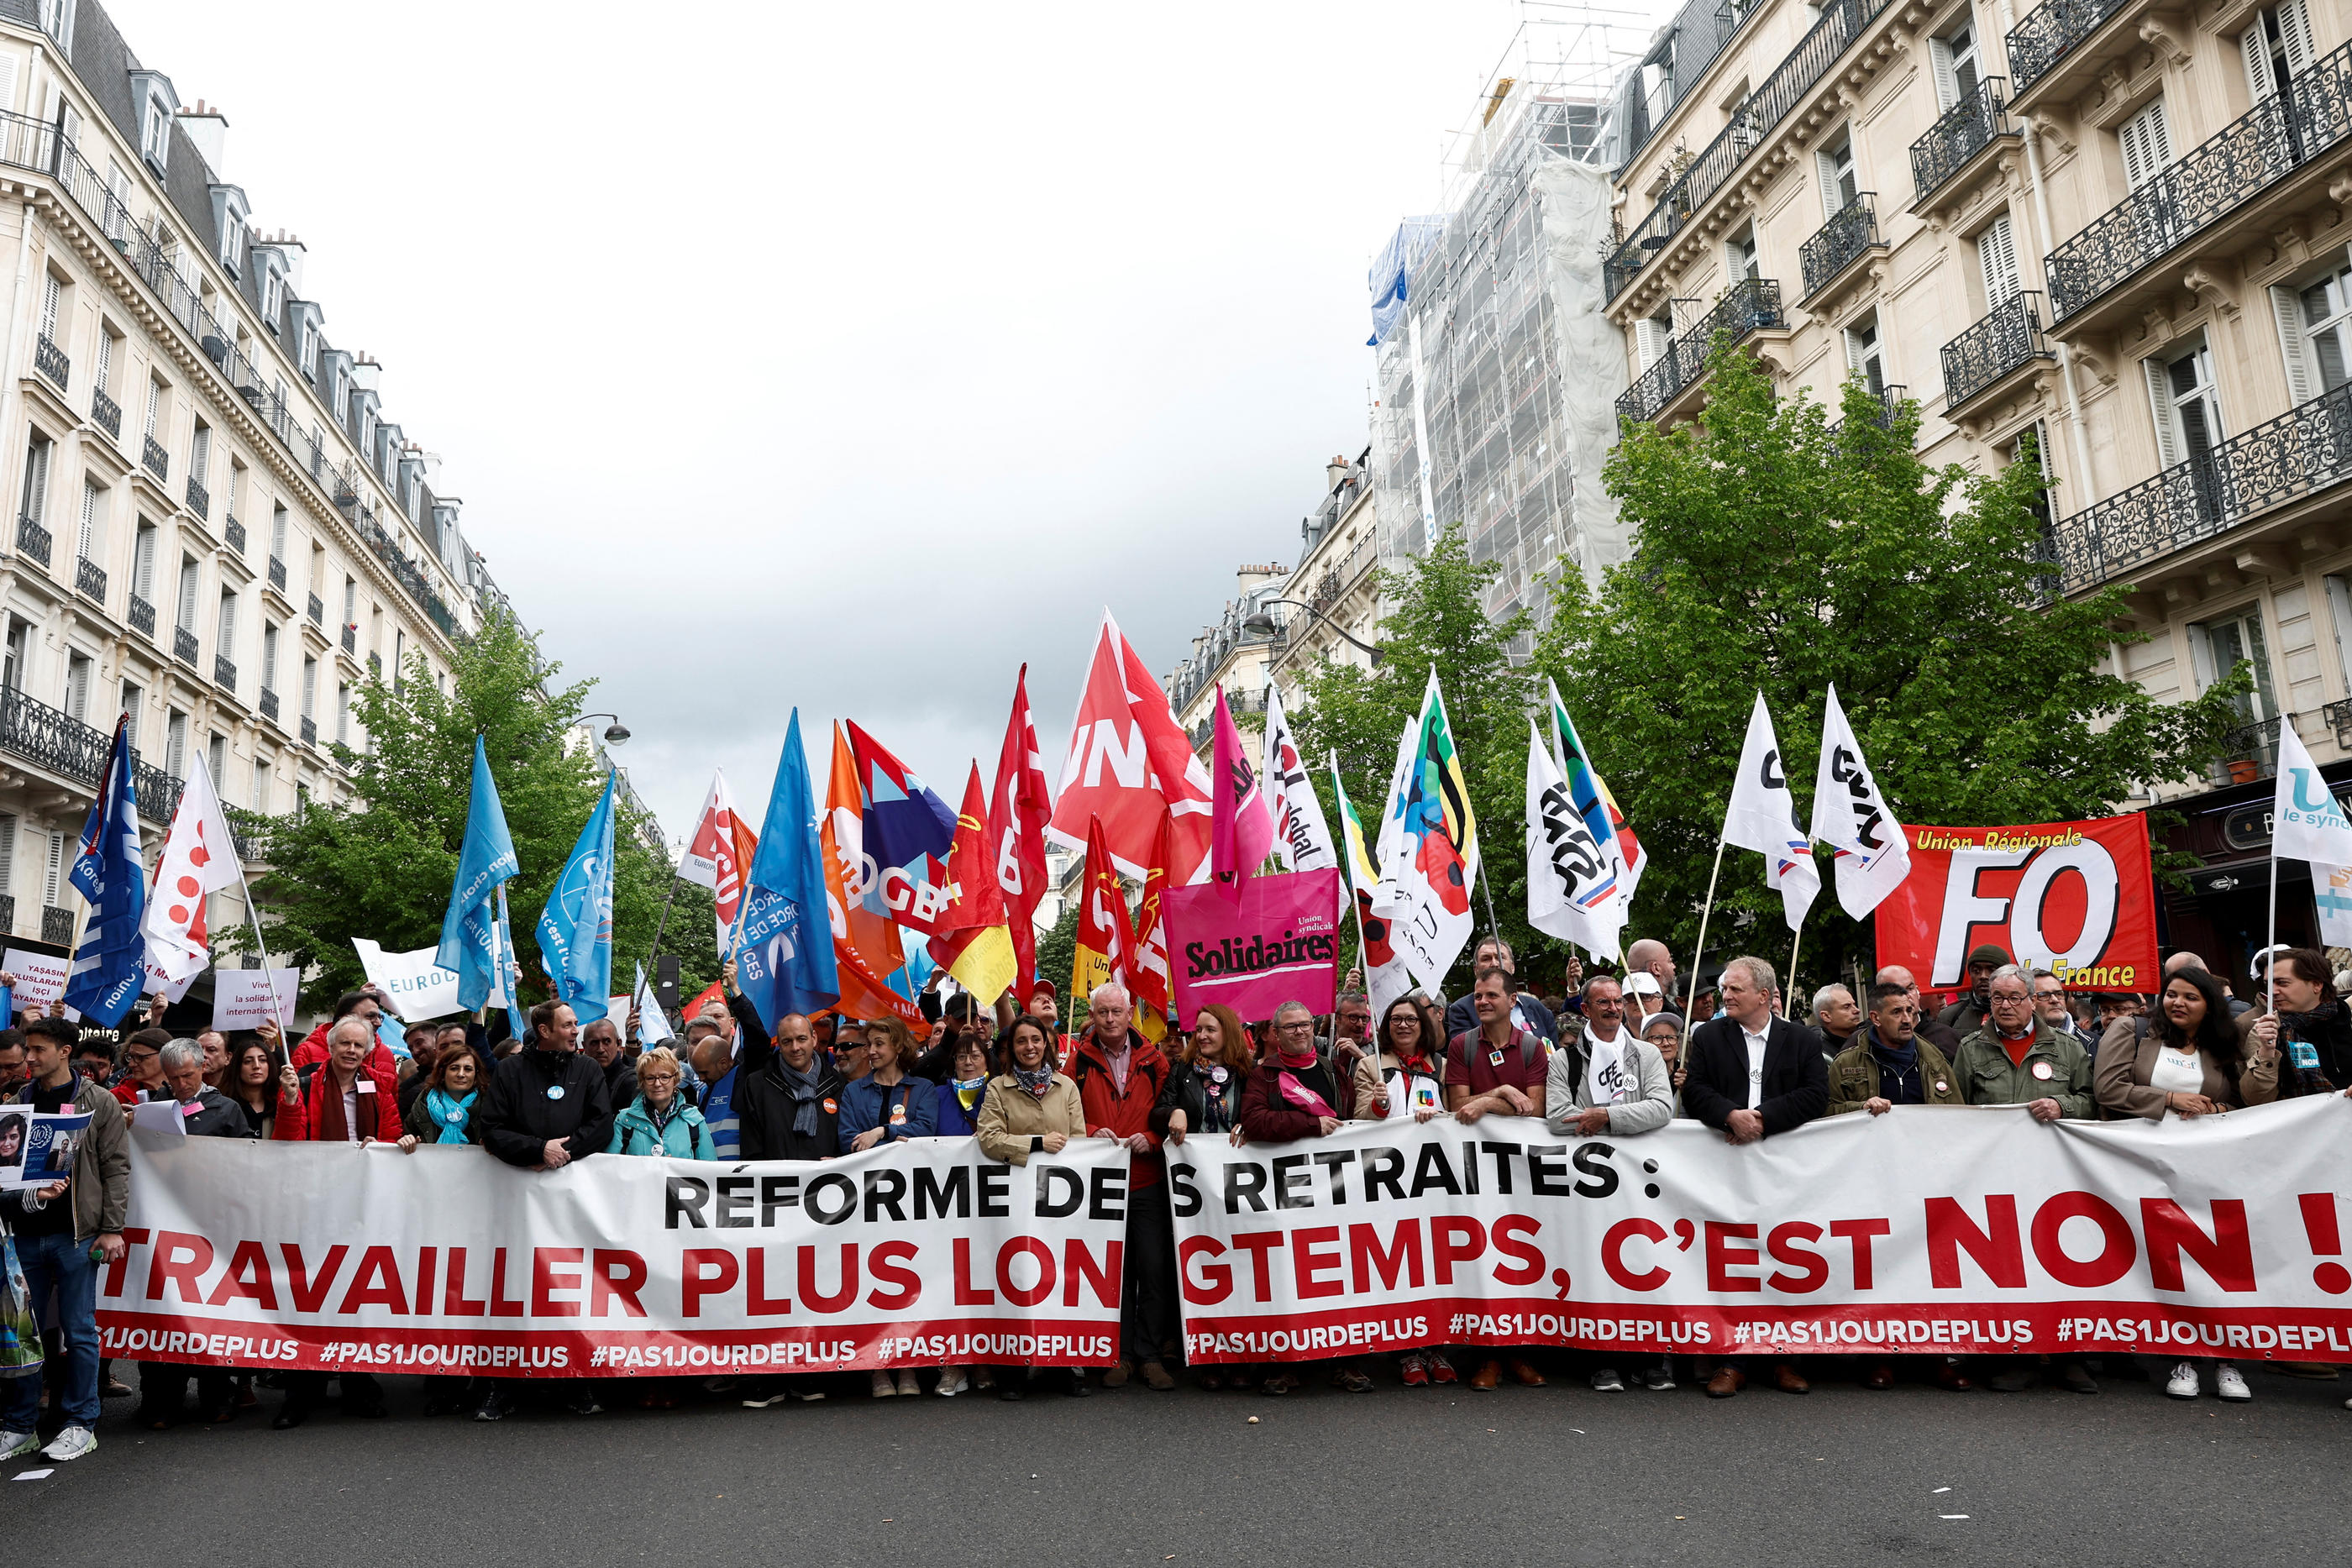 Les responsables de l'intersyndicale lors du défilé du 1er Mai à Paris ce lundi, derrière une banderole marquant leur opposition à la réforme des retraites. REUTERS/Benoît Tessier